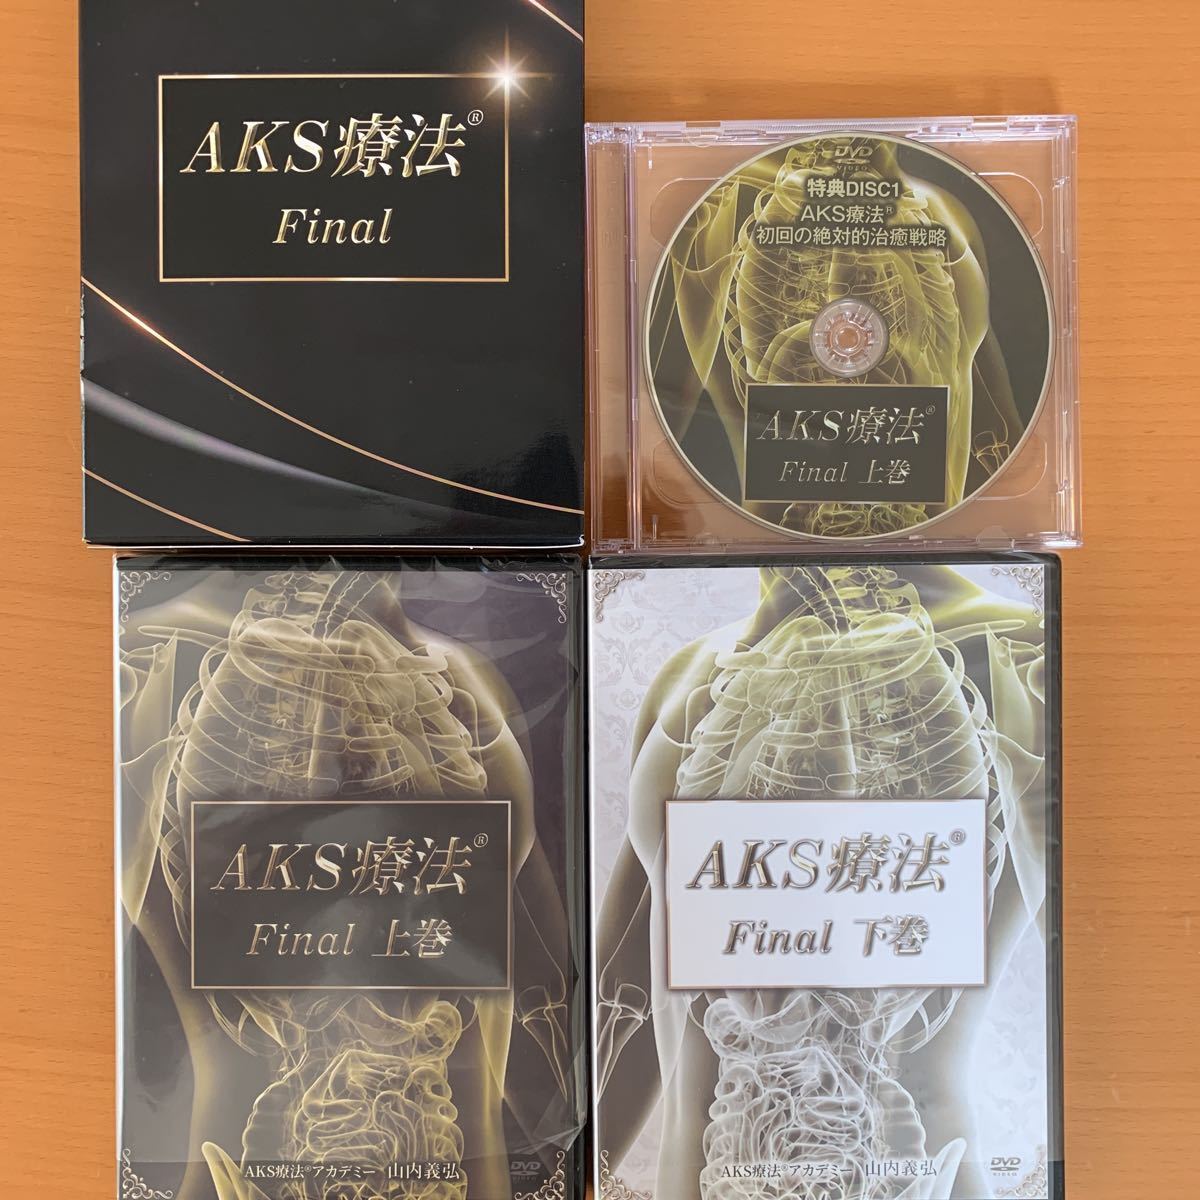 限定BOX】AKS療法®Final 山内義弘先生 | alfasaac.com